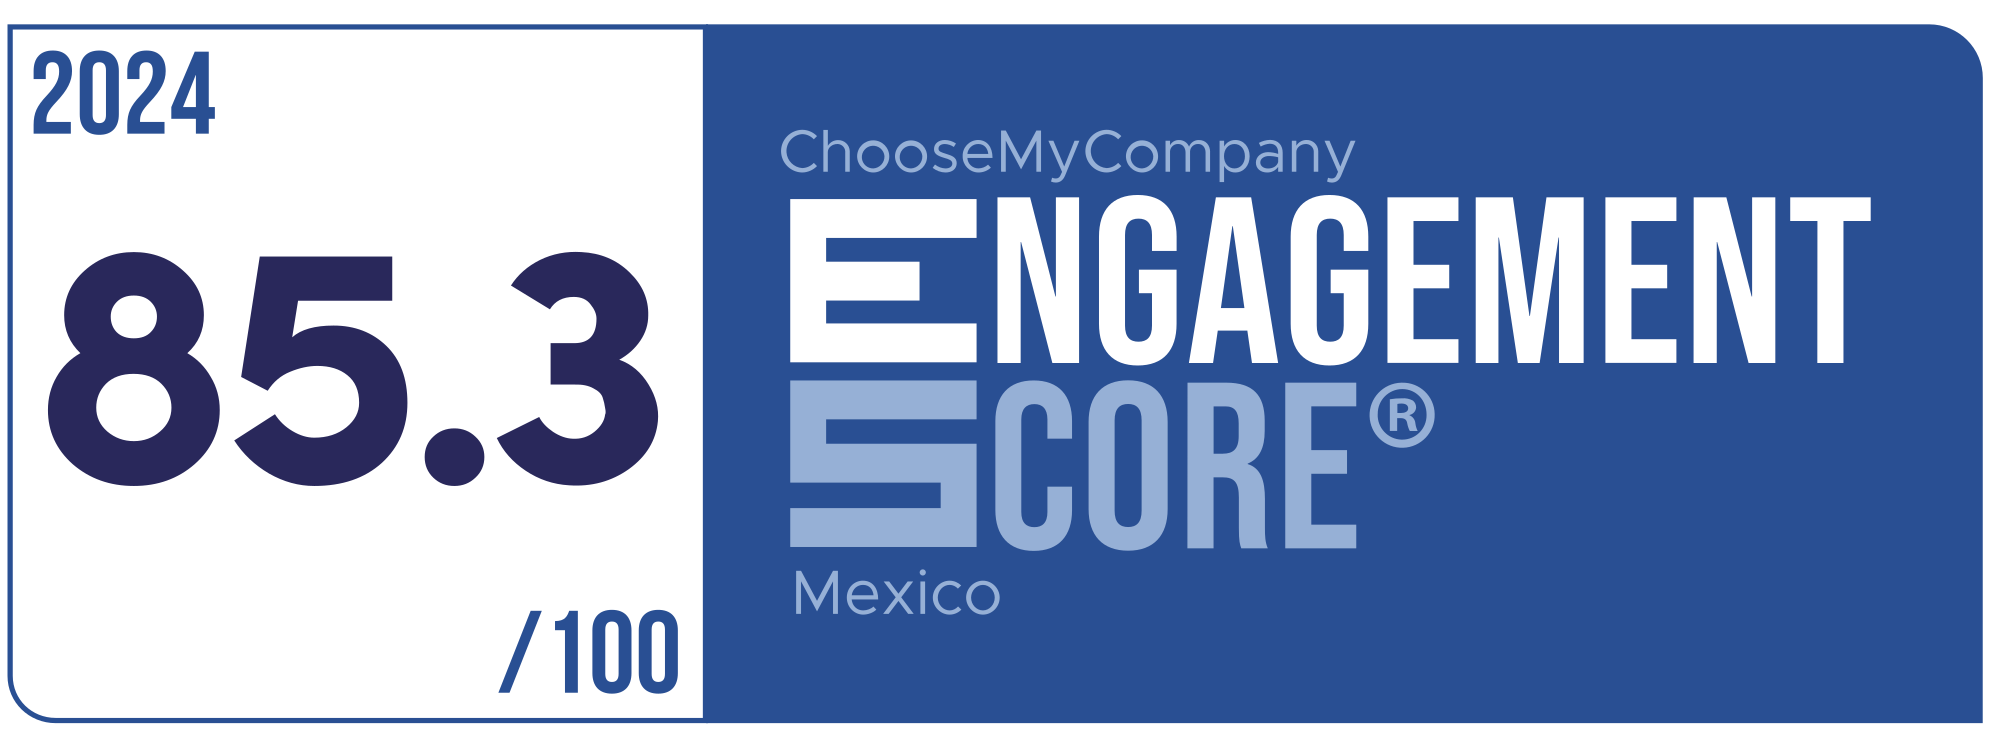 Label Engagement Score 2024 Mexico